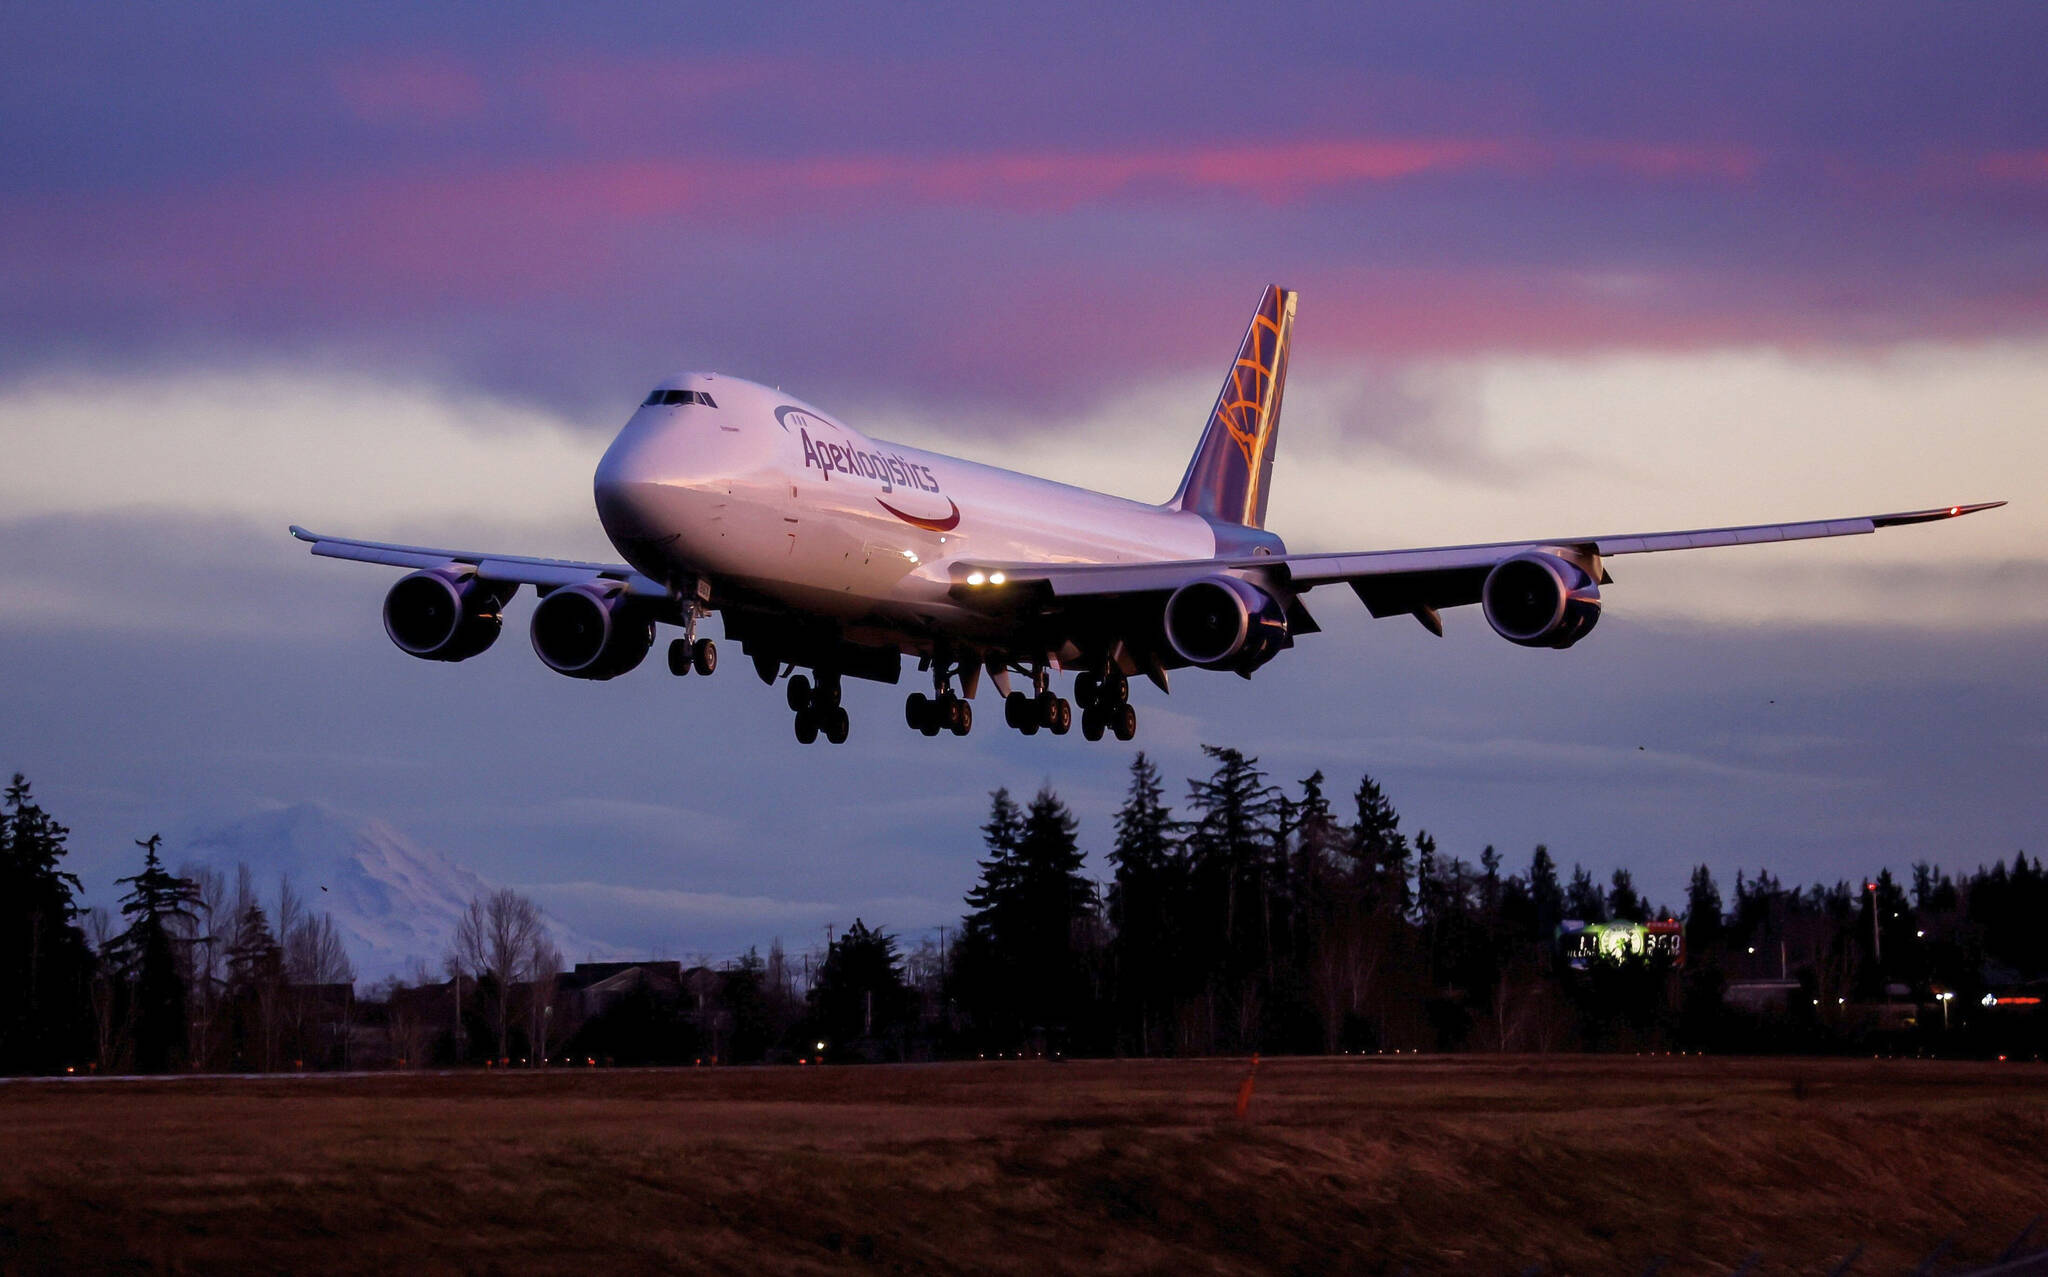 Jennifer Buchanan / The Seattle Times
The final Boeing 747 lands at Paine Field in Everett, Wash., following a test flight Jan. 10.